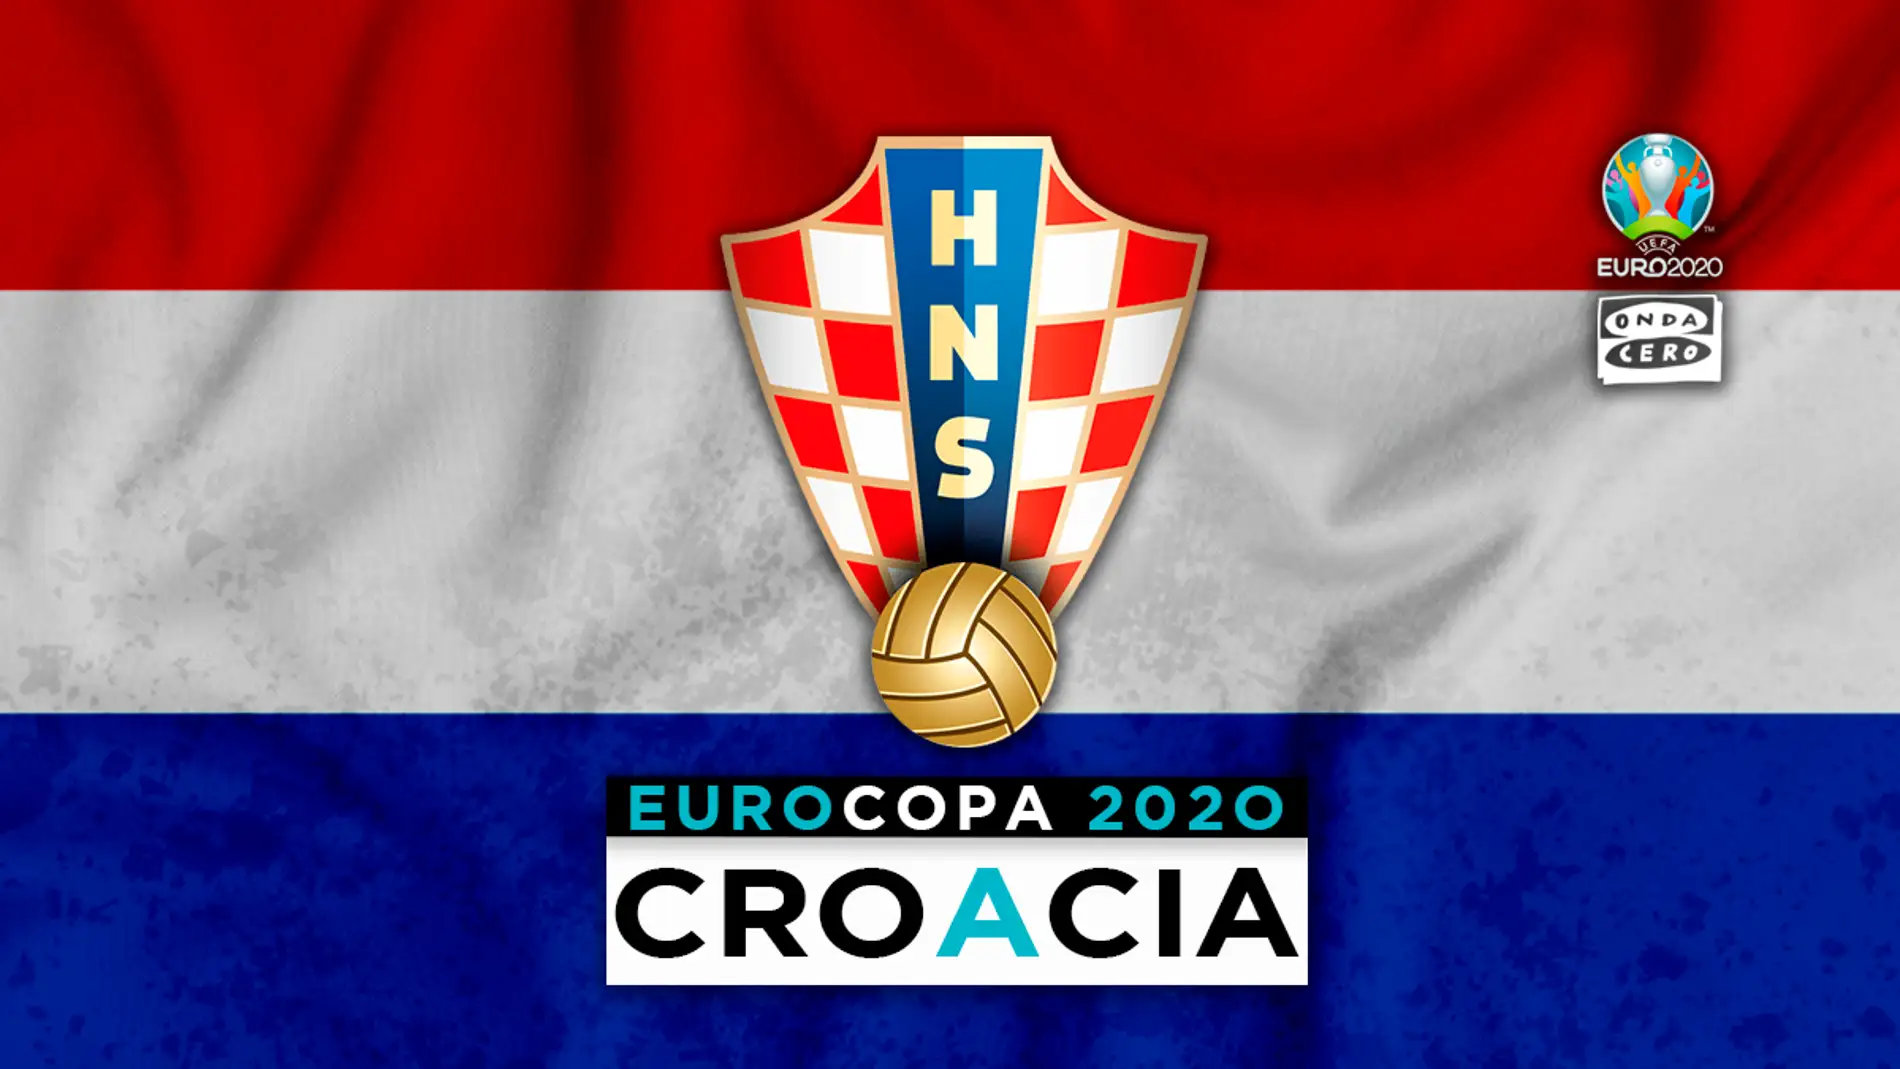 Croacia en la Eurocopa: alineación probable, convocatoria y lista completa de jugadores